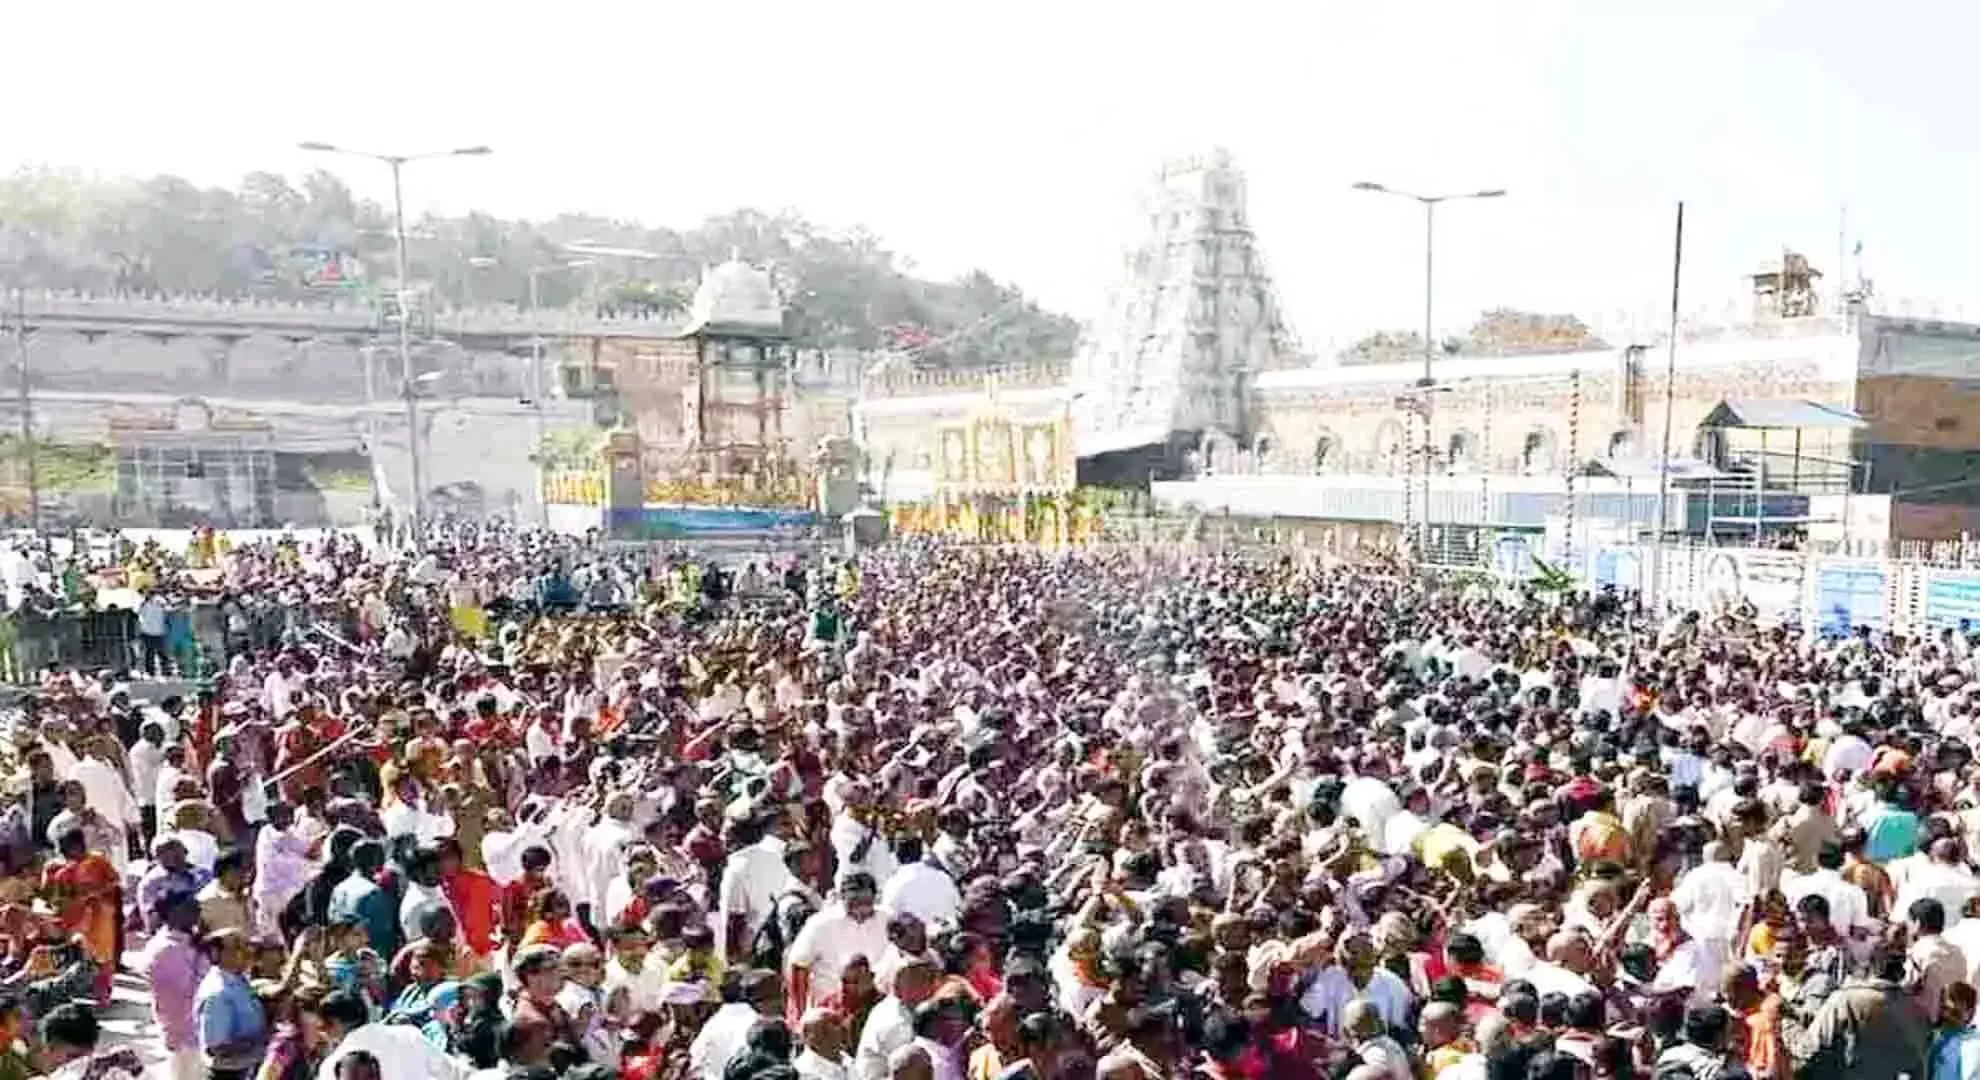 तिरुमाला मंदिर में 18 घंटे तक दर्शन के लिए भक्तों की भीड़ जारी है